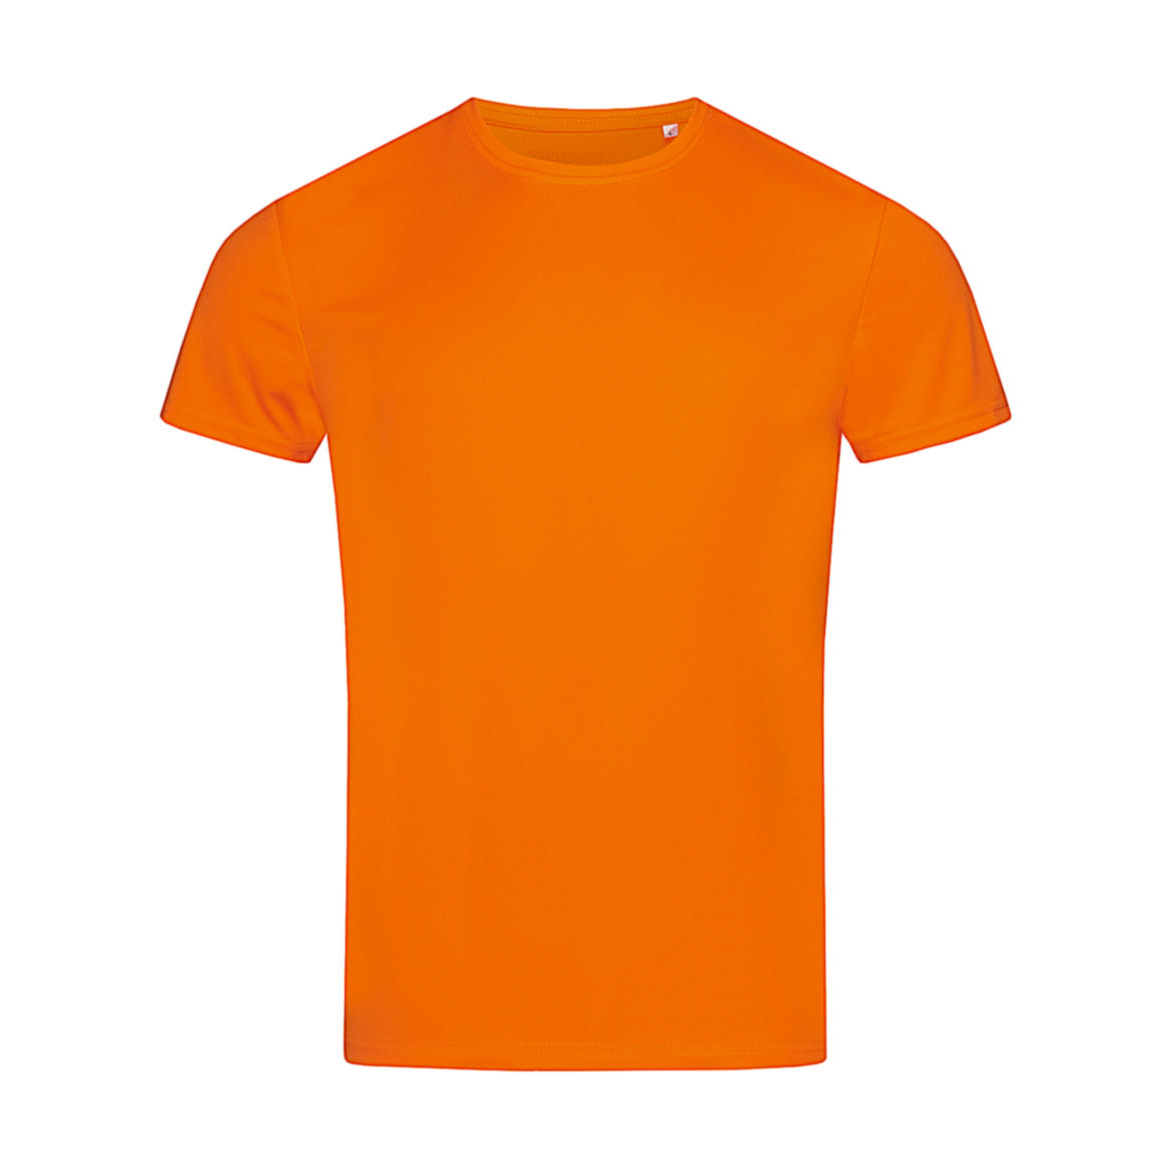 Triko pánské Stedman sportovní tričko - oranžové, M